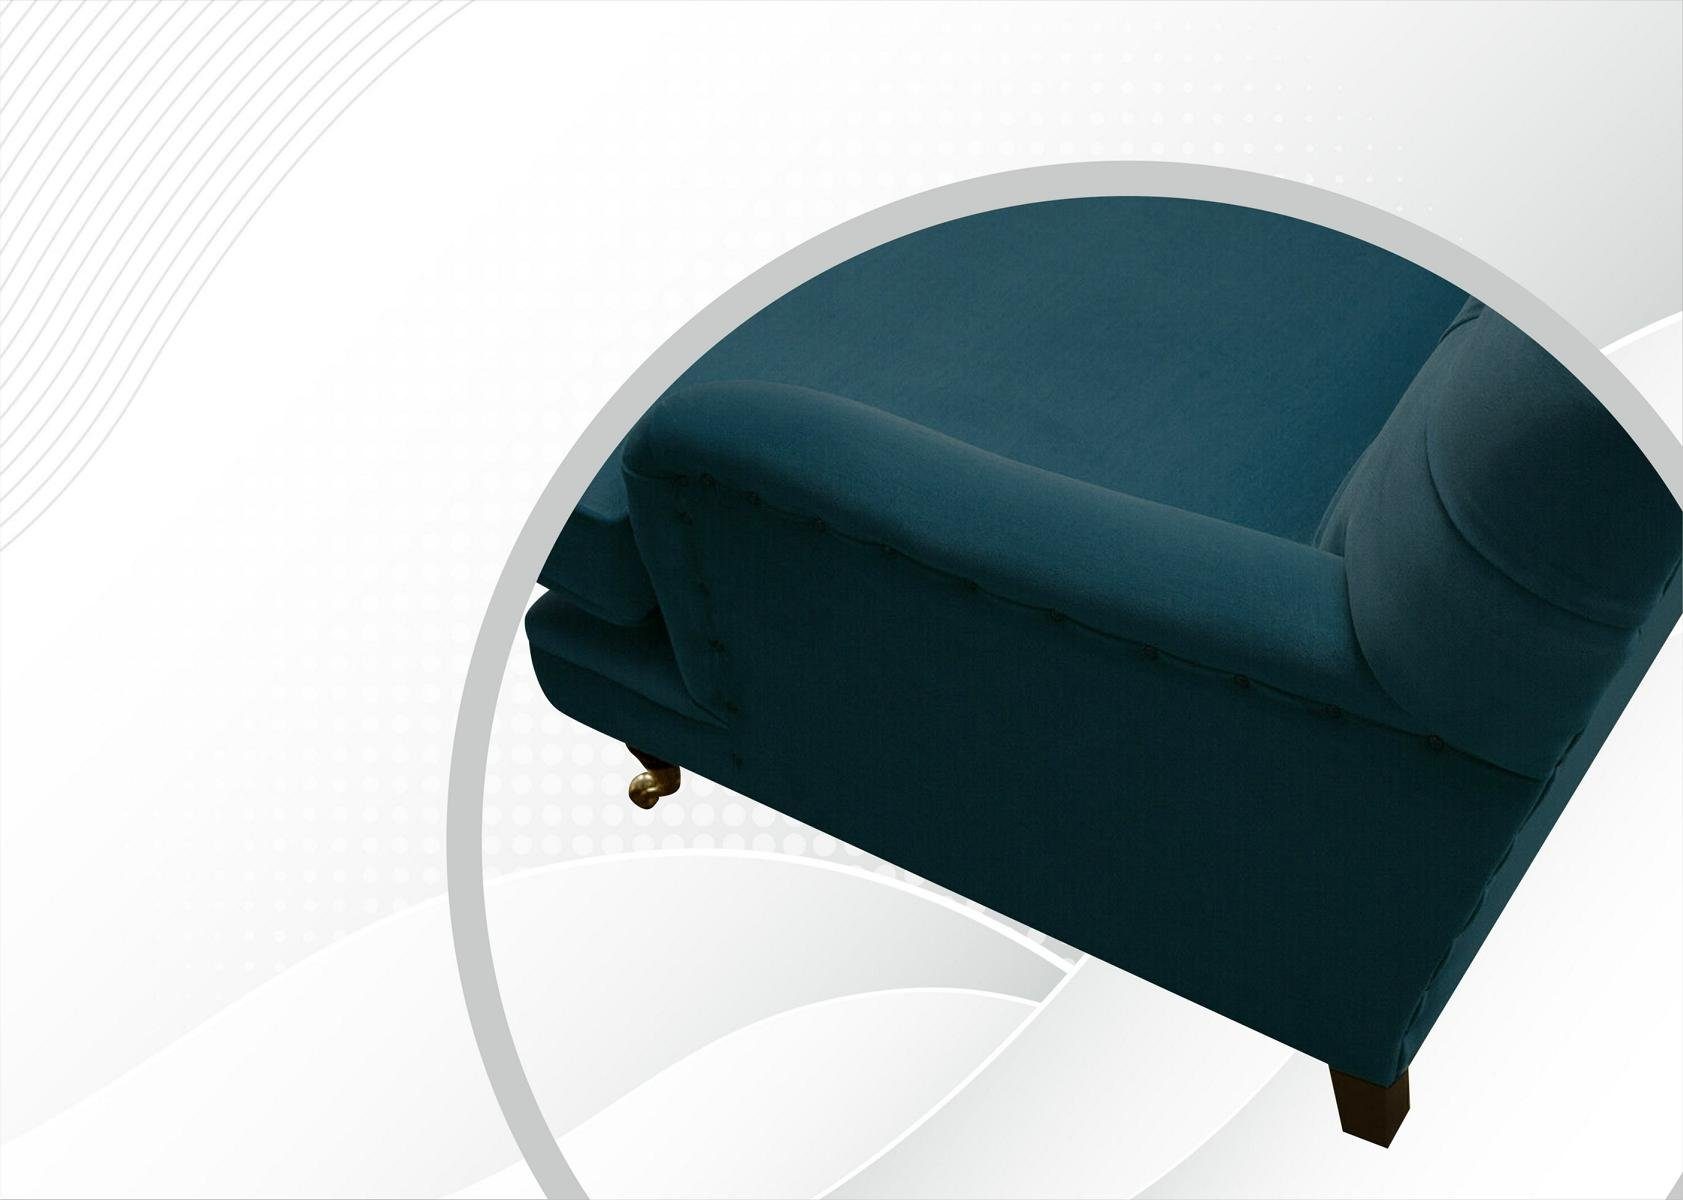 Rückenlehne Chesterfield Chesterfield-Sofa, Die mit cm, 3 JVmoebel Couch Sitzer Sofa Design Knöpfen. 190